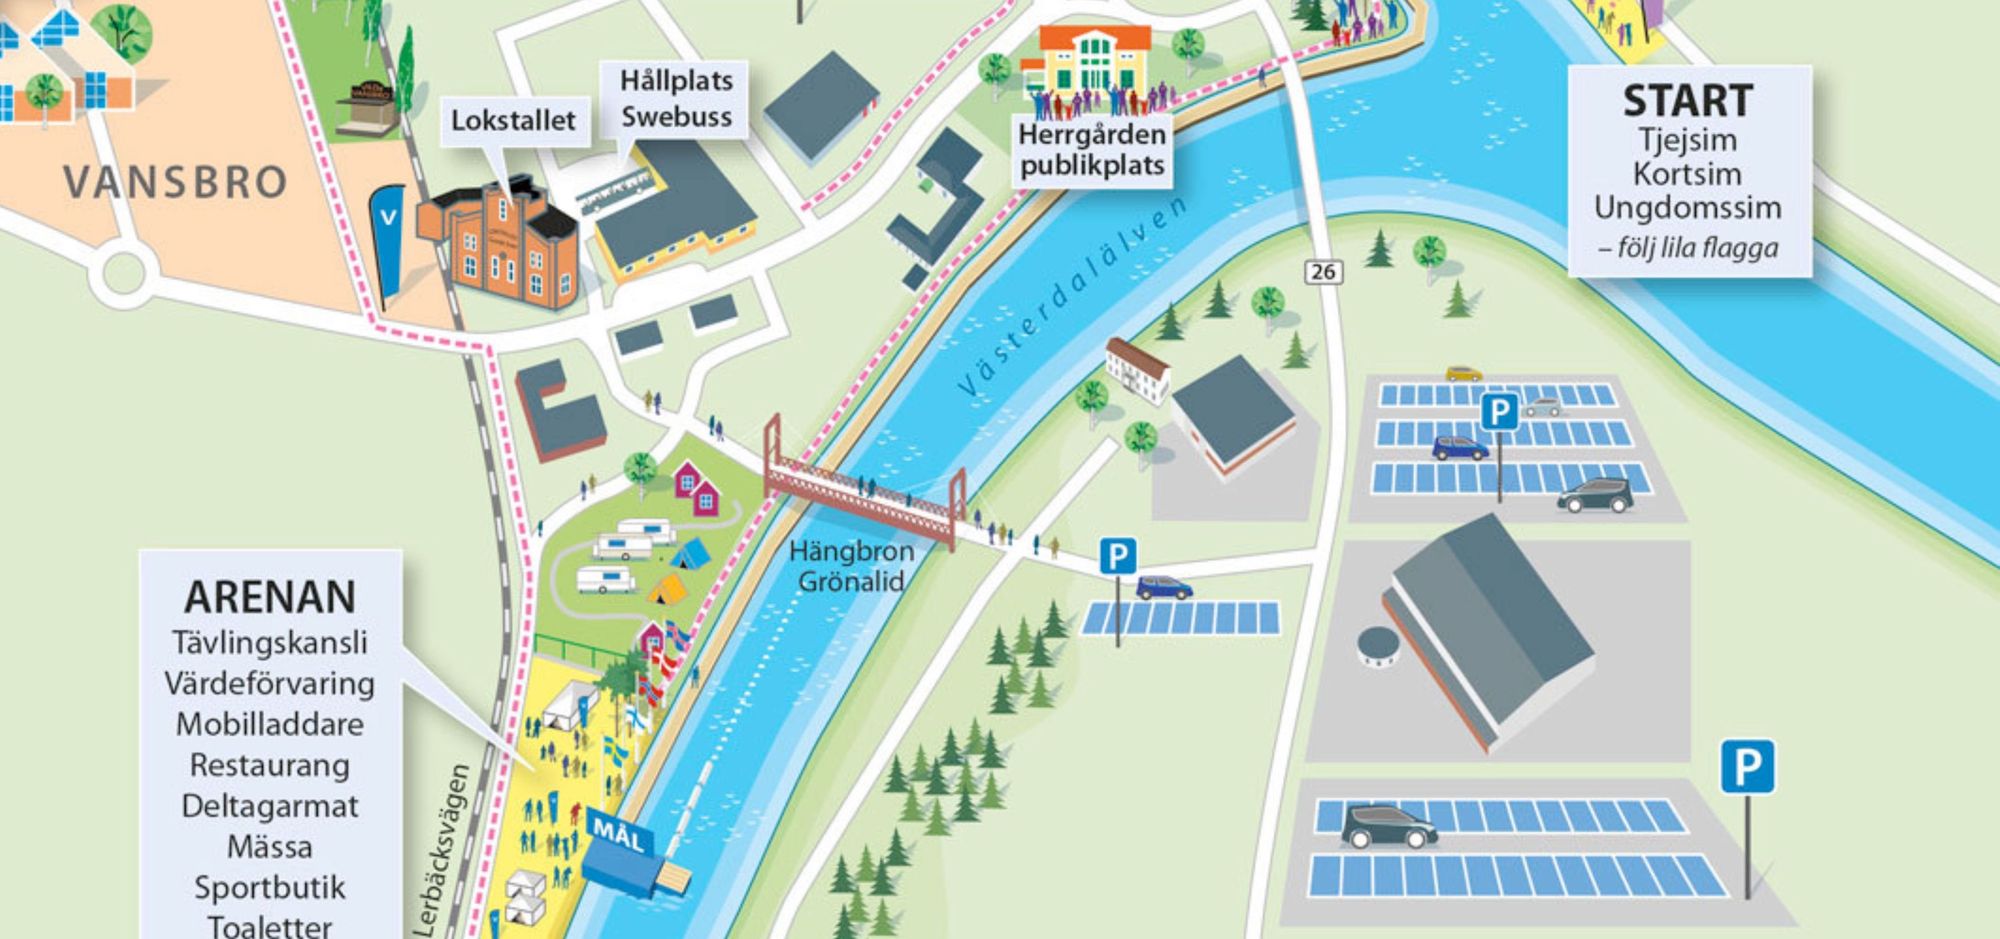 Karta över bana med start och mål för tjejsimmet från Vansbrosimningens hemsida